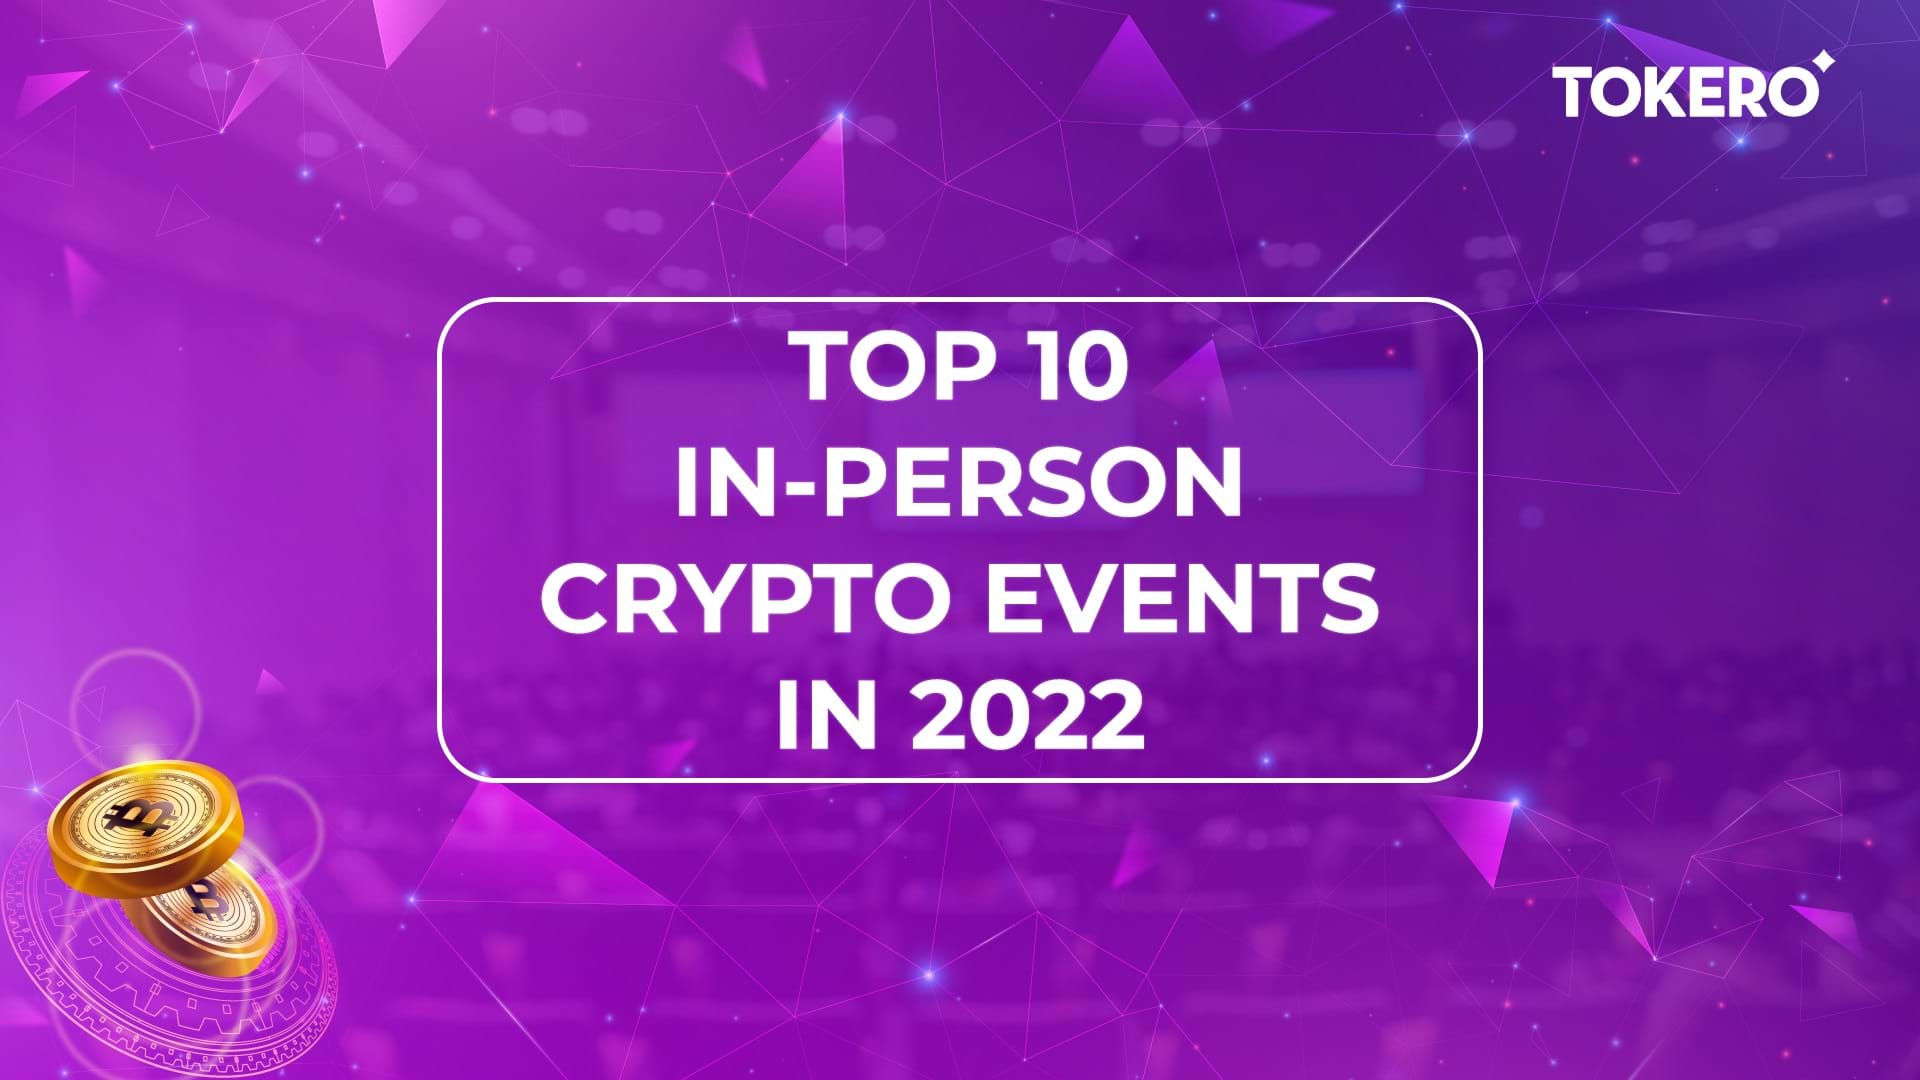 Top 10 evenimente în-persoană, pe 2022, din lumea crypto